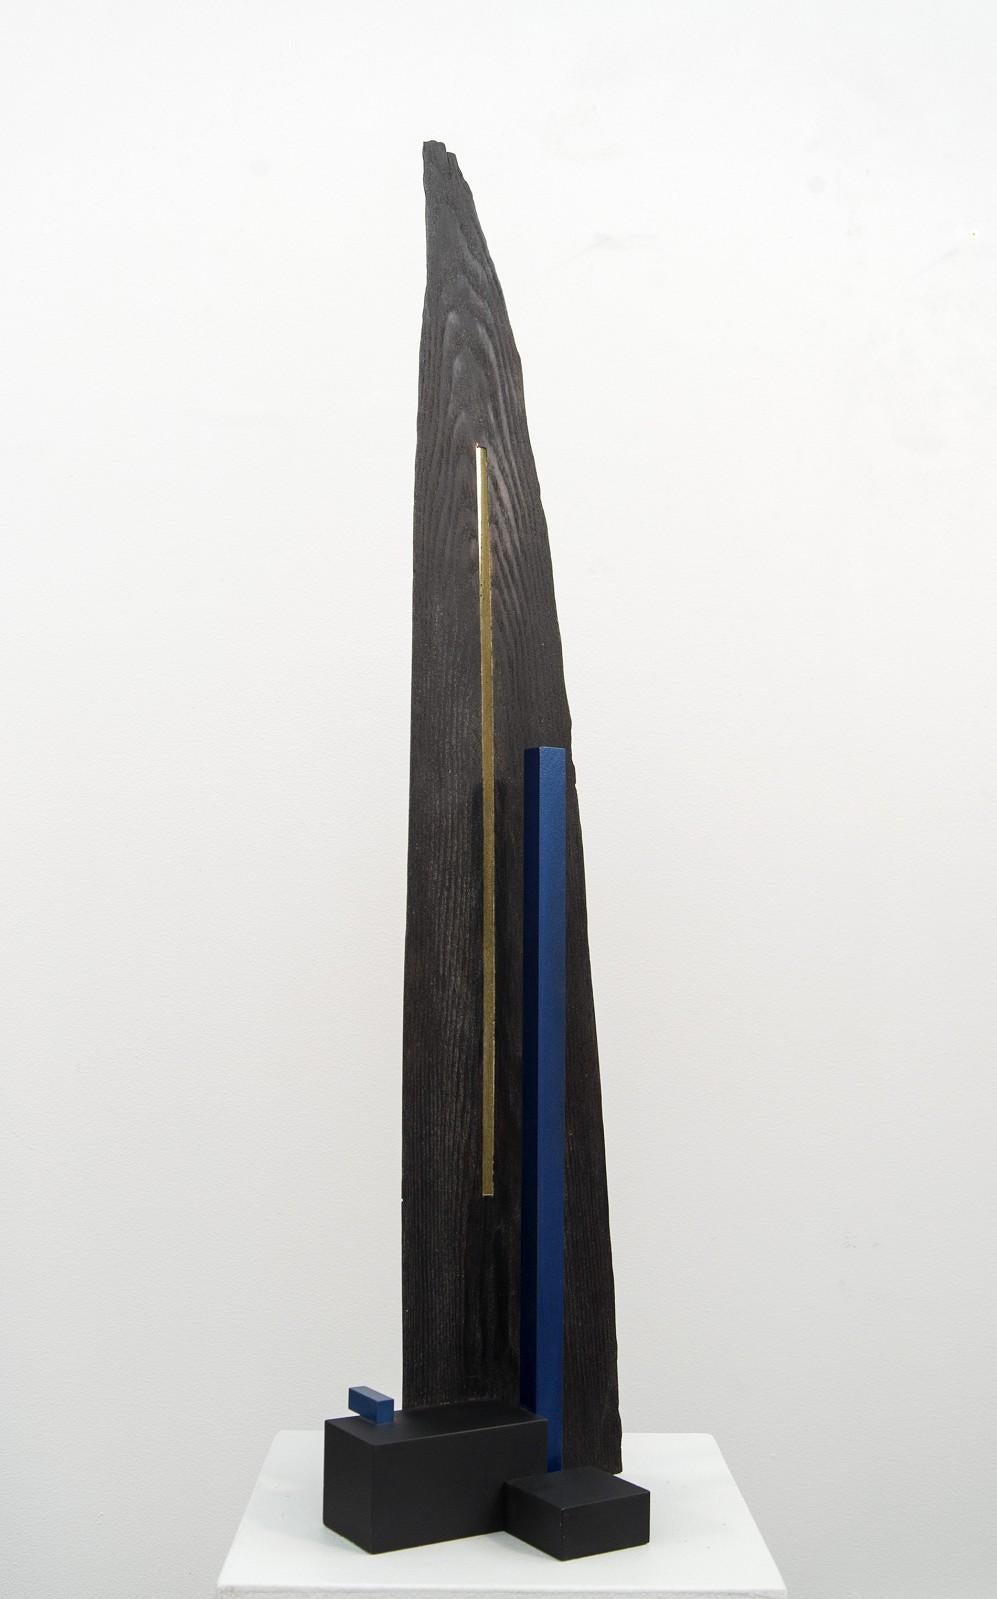 Edward Falkenberg Abstract Sculpture - Abide - dark, dynamic, modern, contemporary, abstract, wooden sculpture